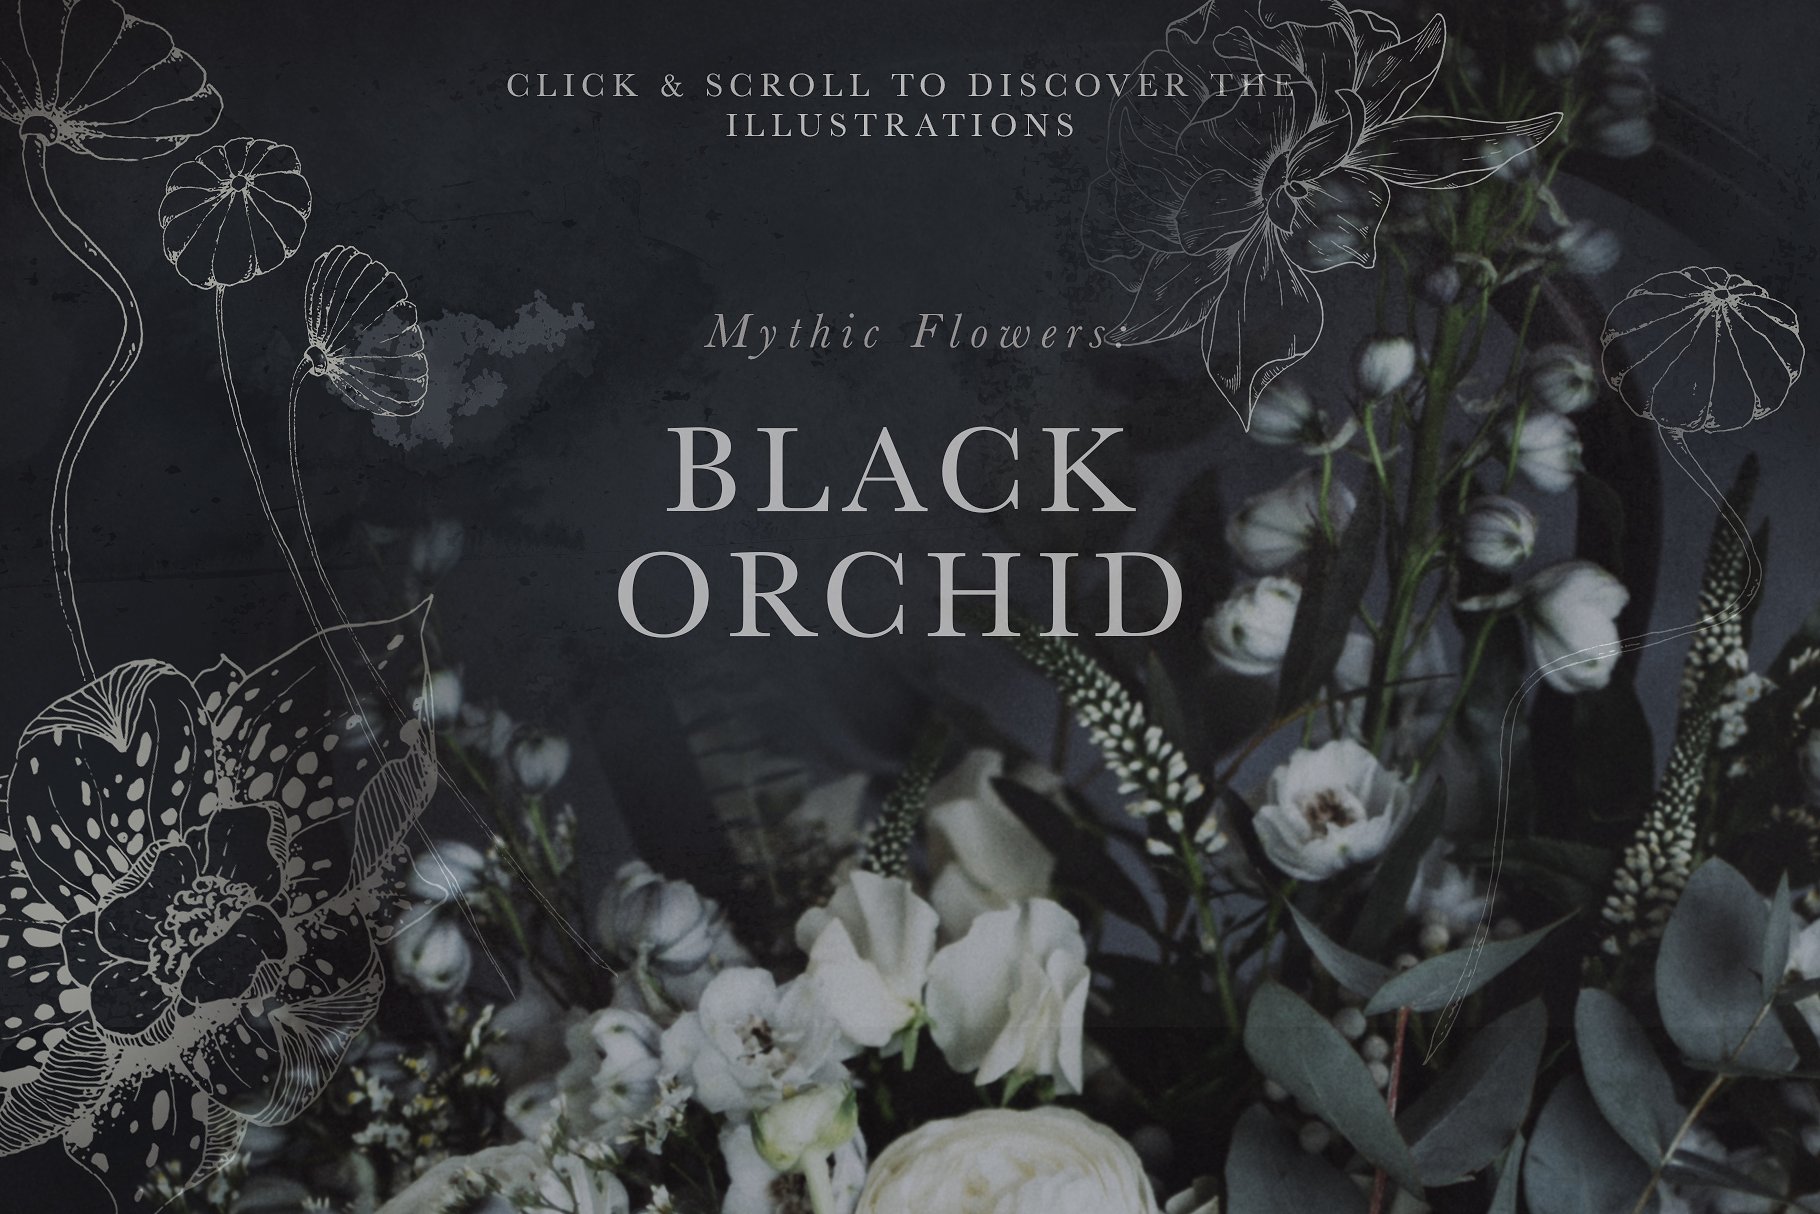 虚实结合黑色背景手绘矢量花卉图形素材 Black Orchid Illustration Set插图1